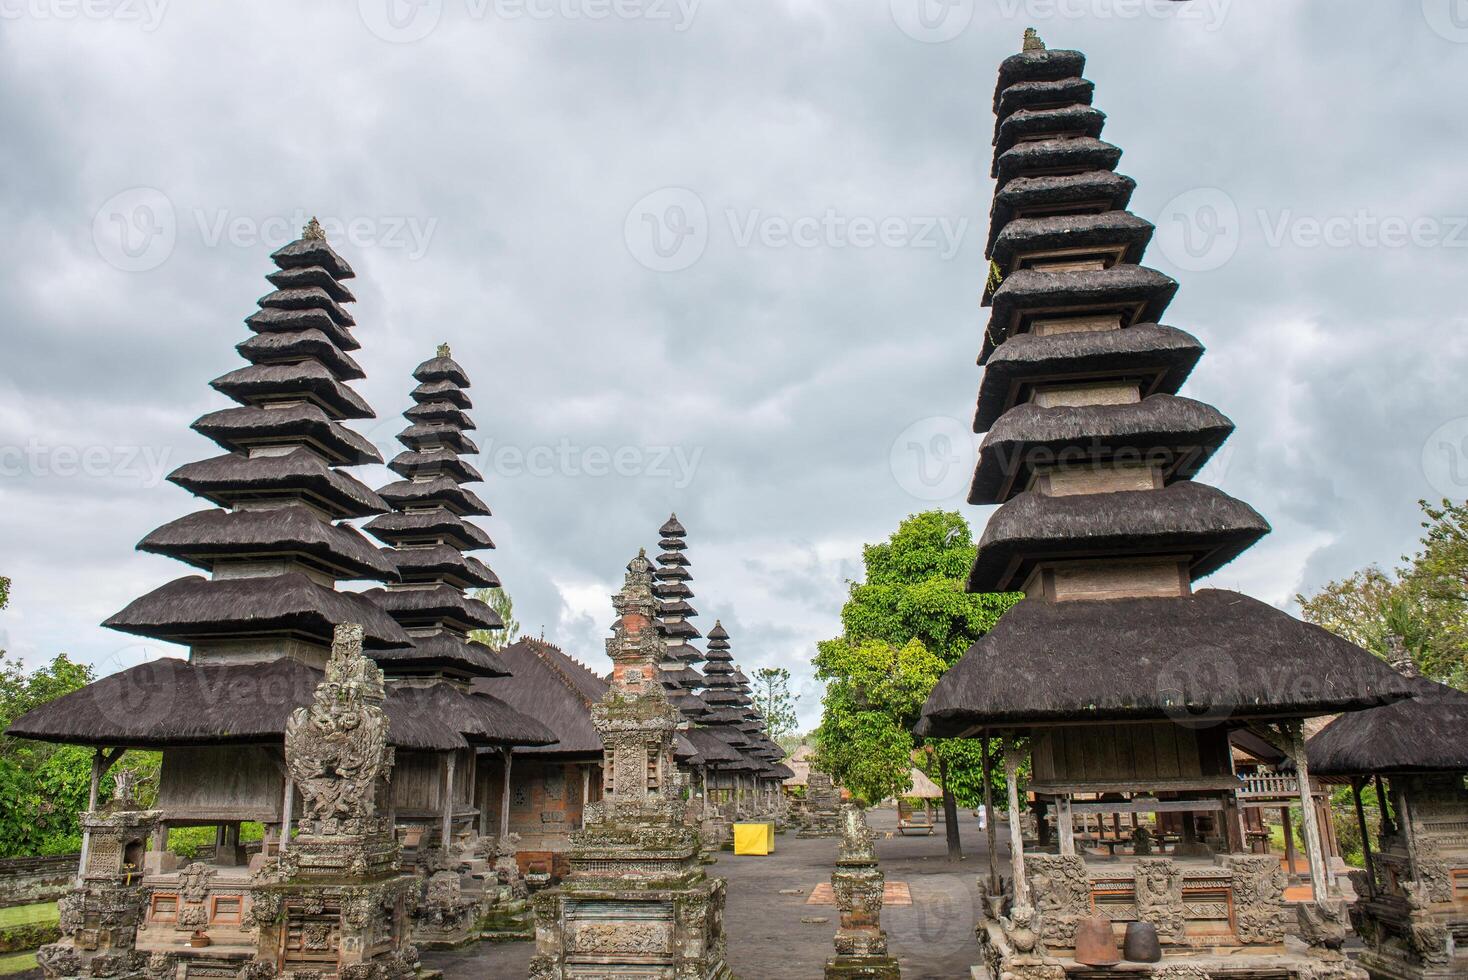 einer von das Beliebt Tempel im bali genannt pura Taman Ayun das königlich Tempel von Mengwi Reich im badung Regentschaft, Bali, Indonesien. Aussicht im das wolkig Tag. foto